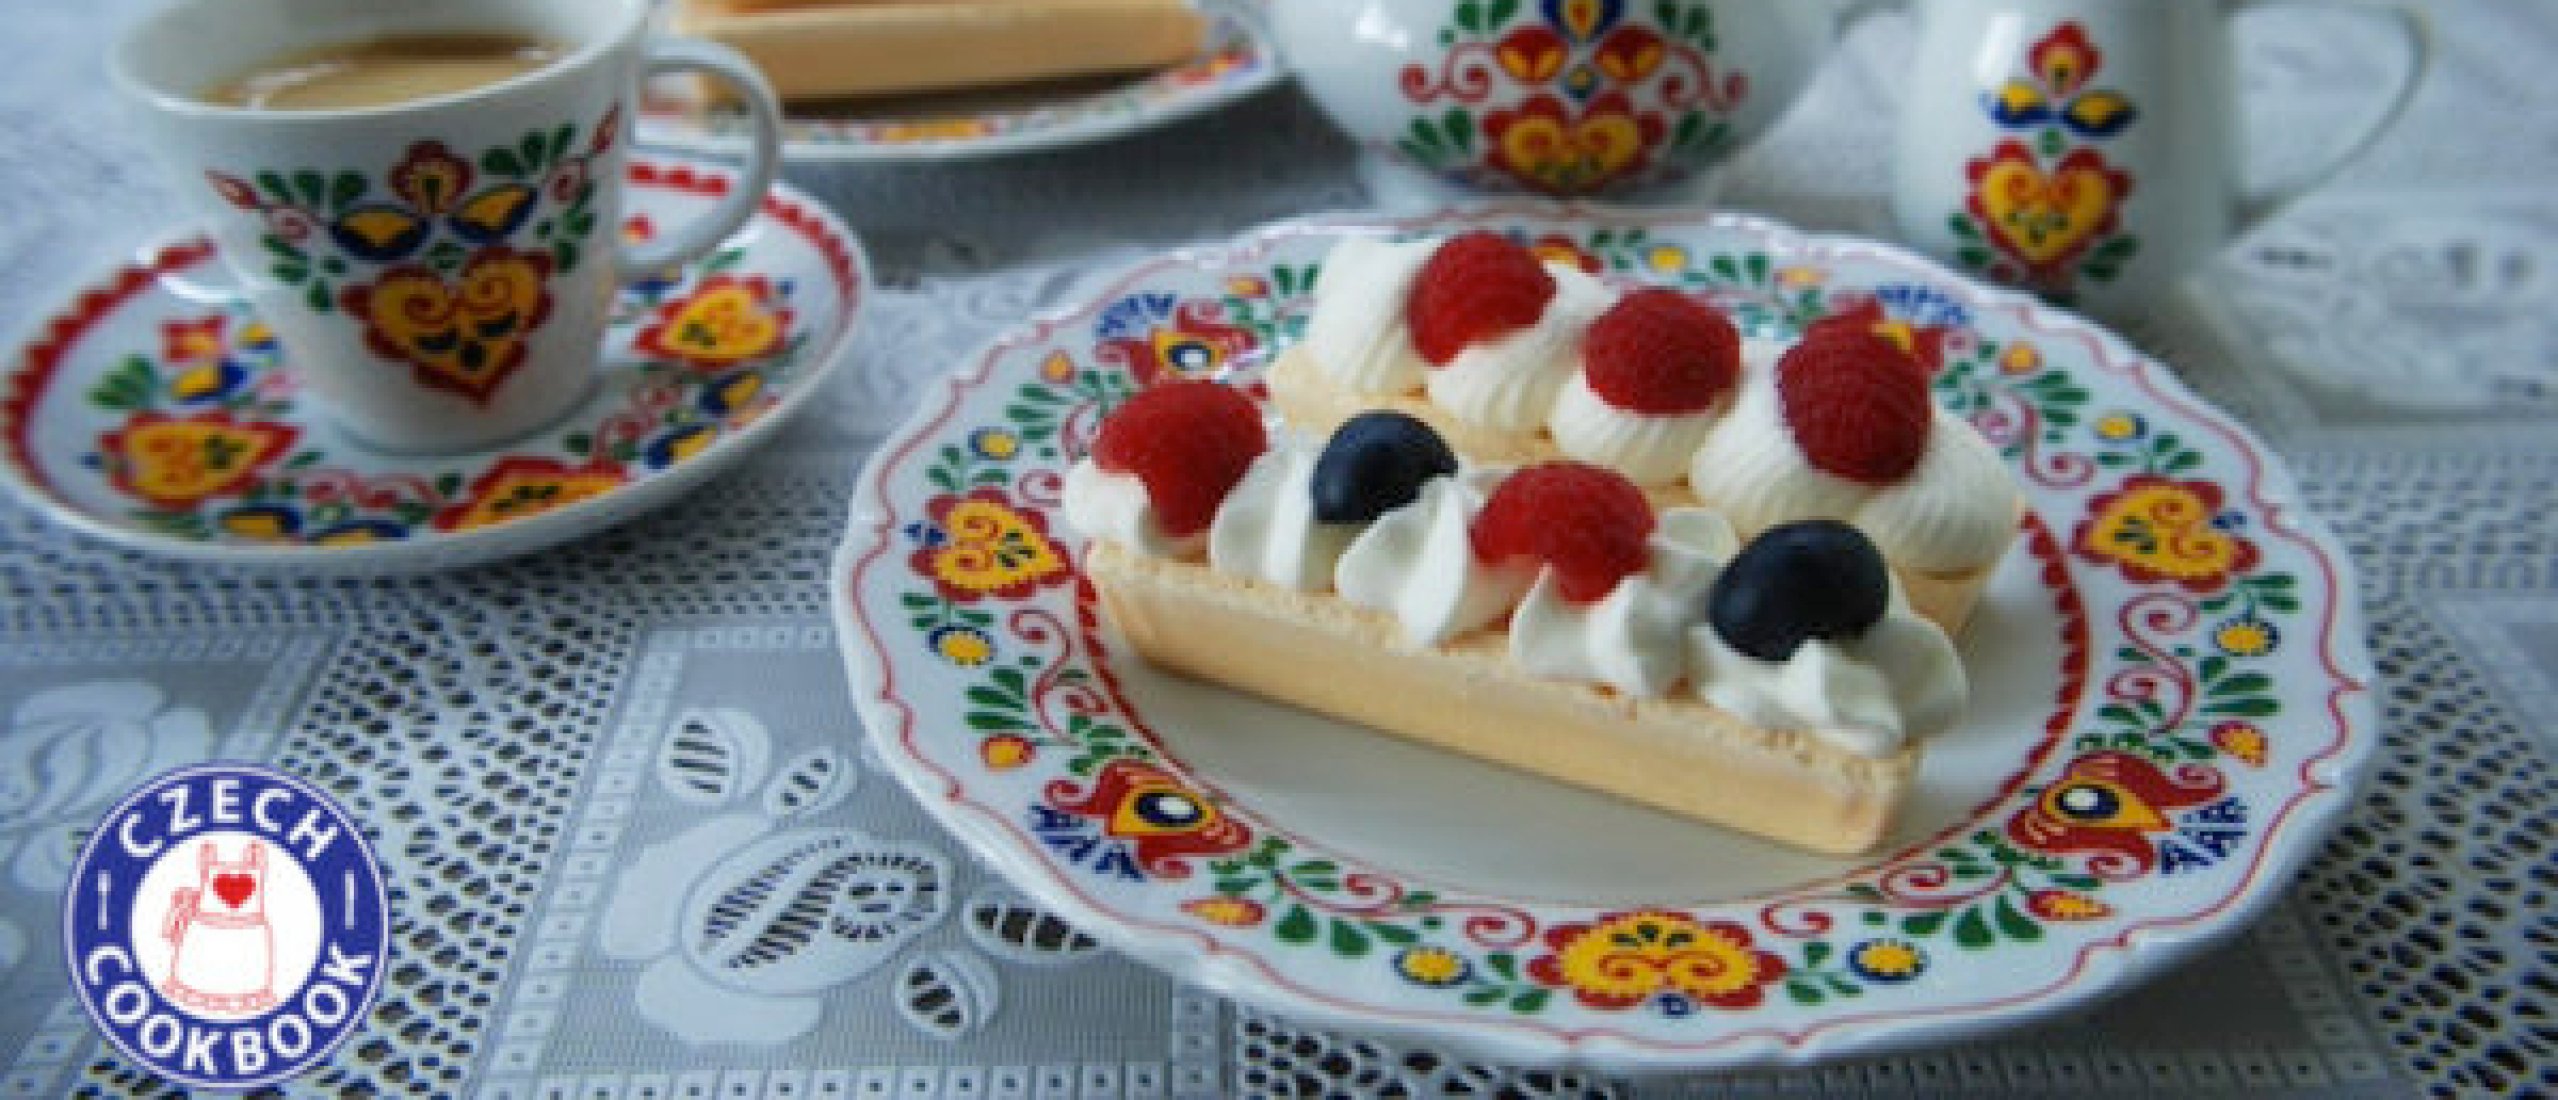 Rakvičky-Rezept enthüllt: das Geheimnis hinter diesem köstlichen Dessert